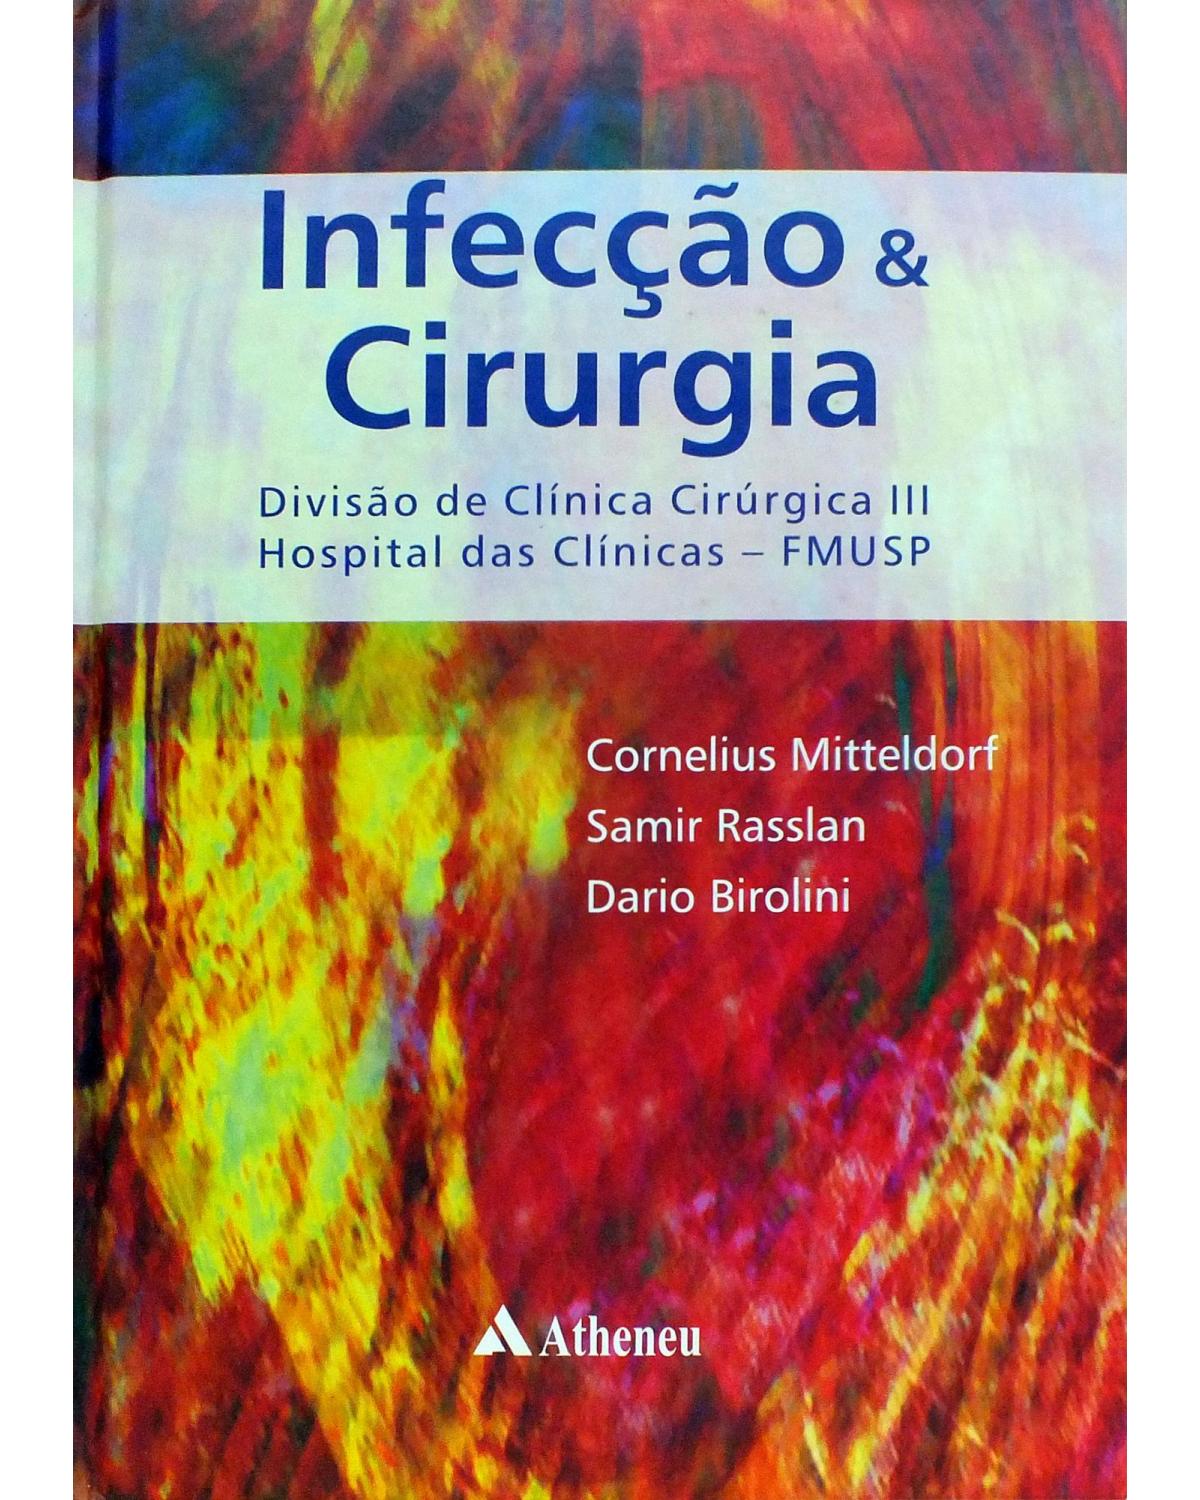 Infecção e cirurgia - divisão de clínica cirúrgica III Hospital das Clínicas - FMUSP - 1ª Edição | 2007